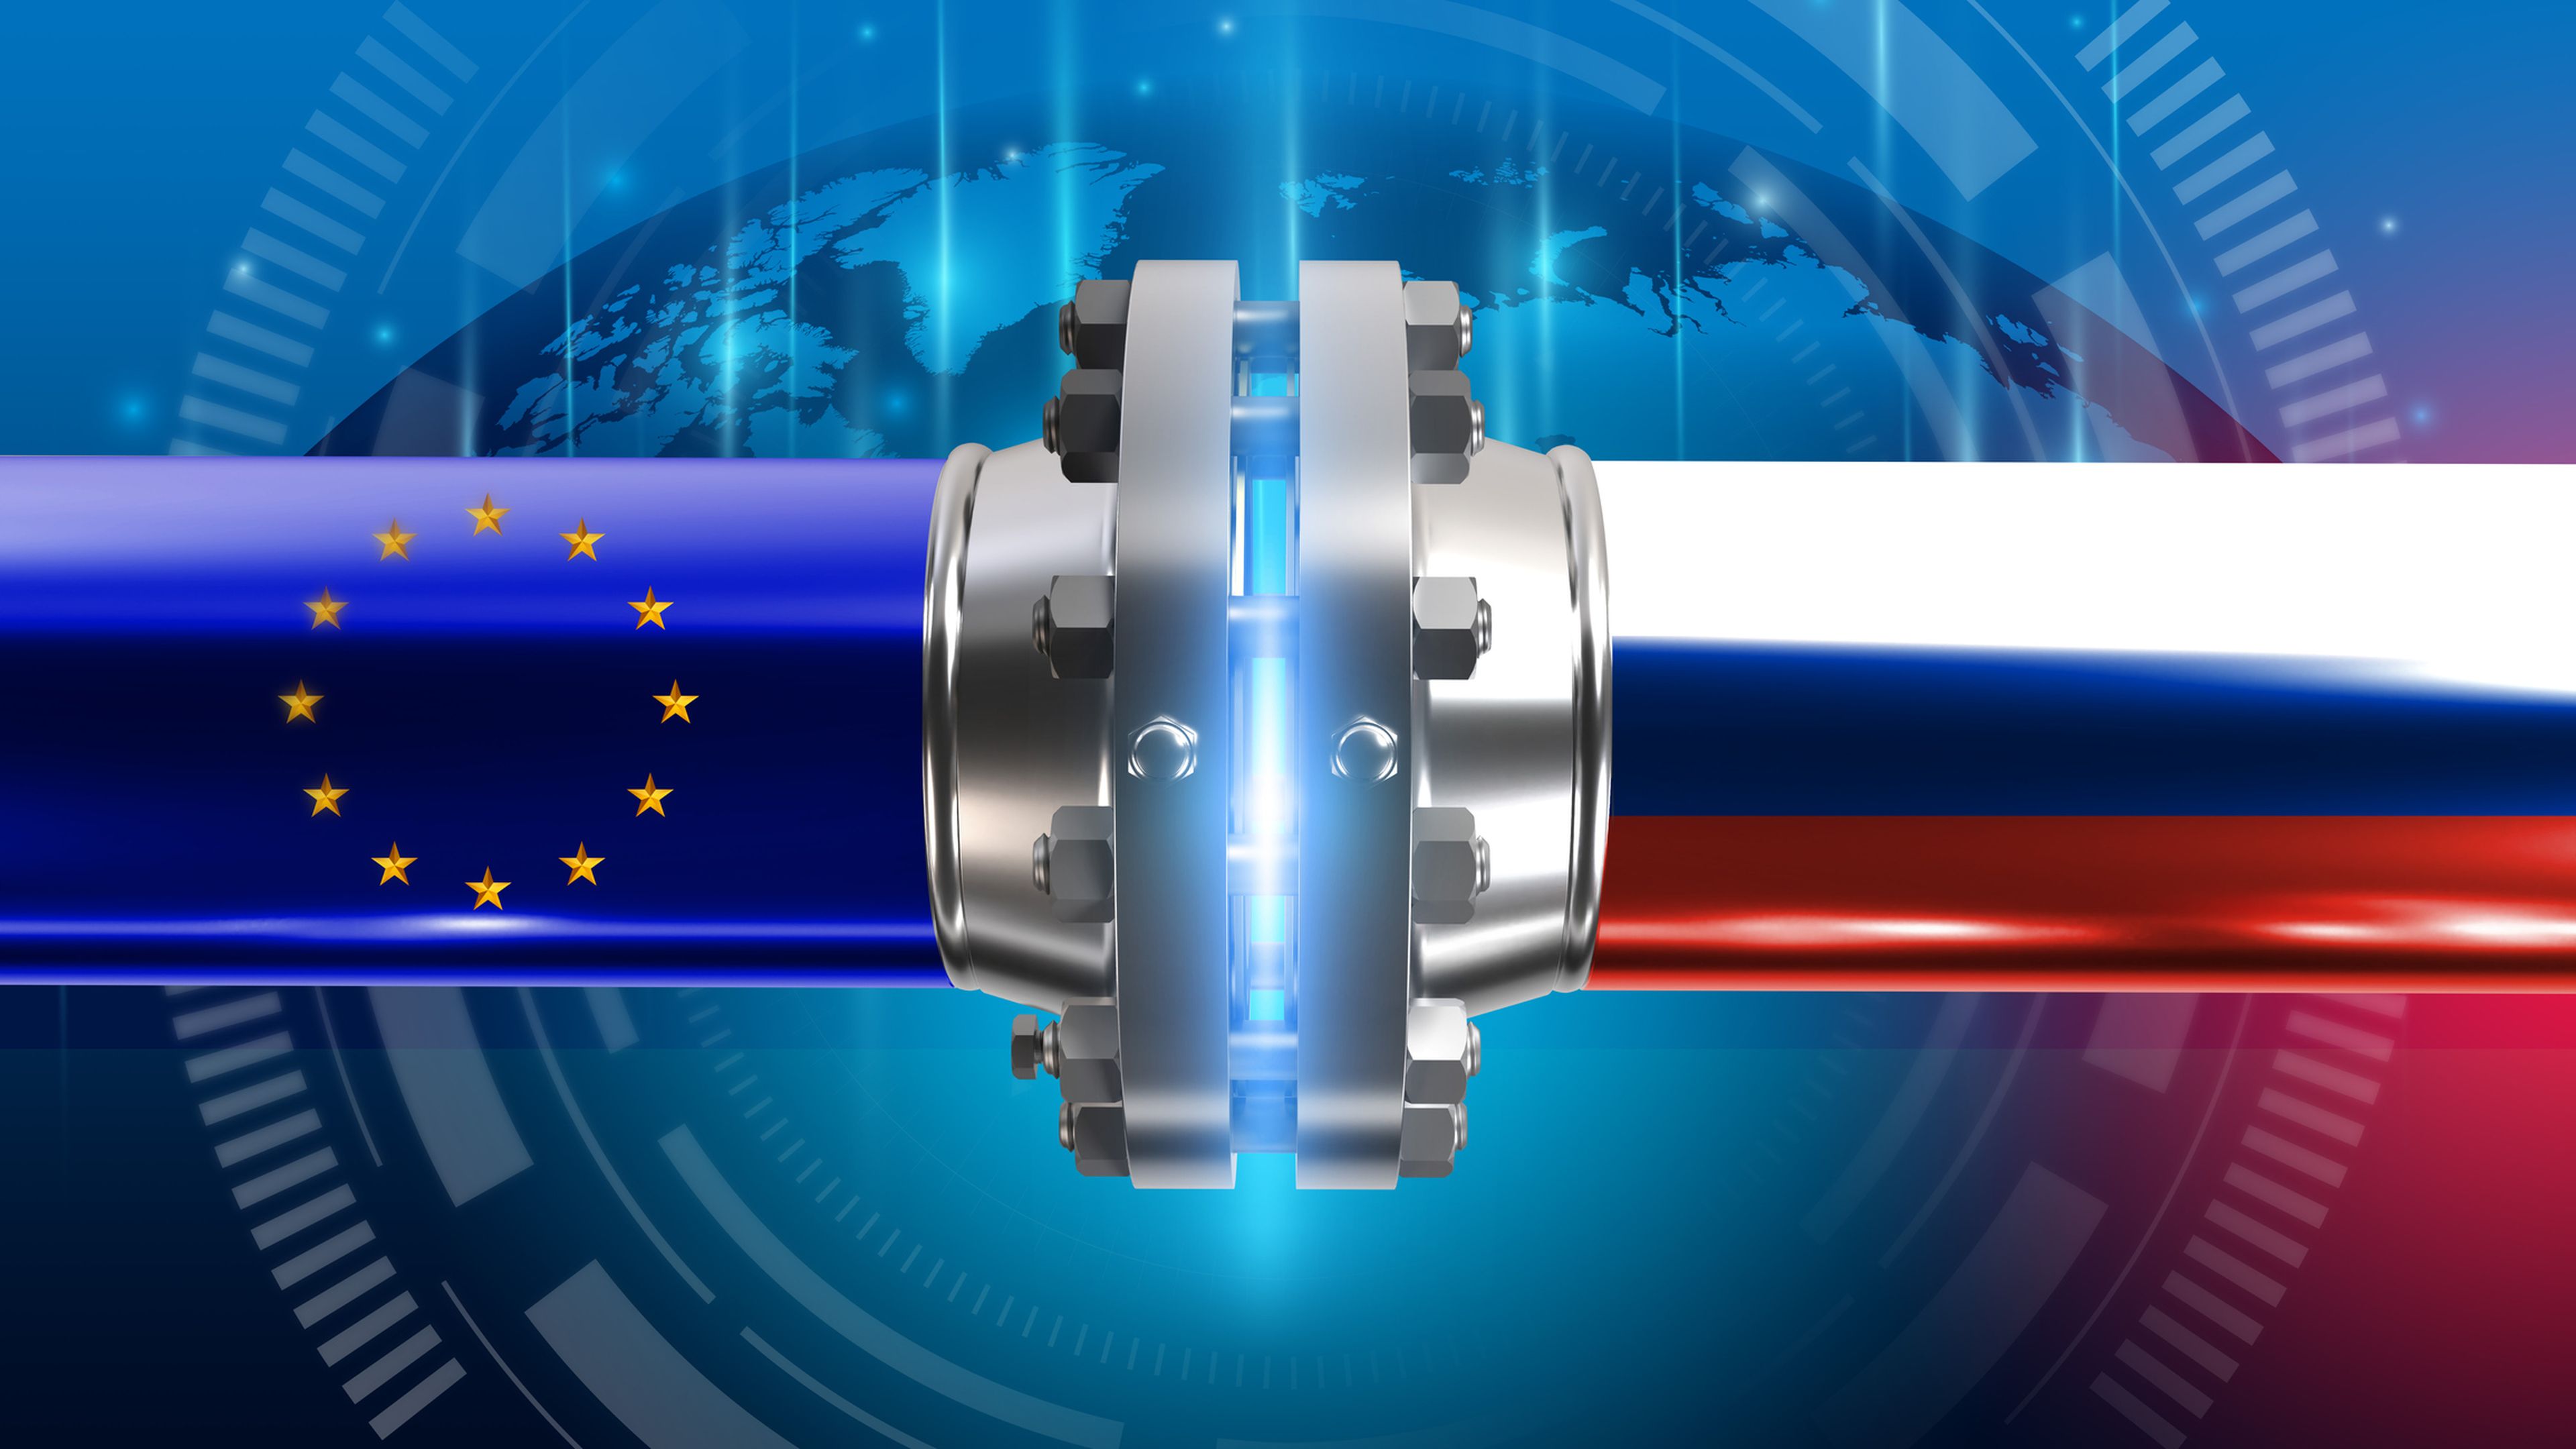 Ilustración con una tubería con la bandera europea que se engancha con otra con la bandera rusa.